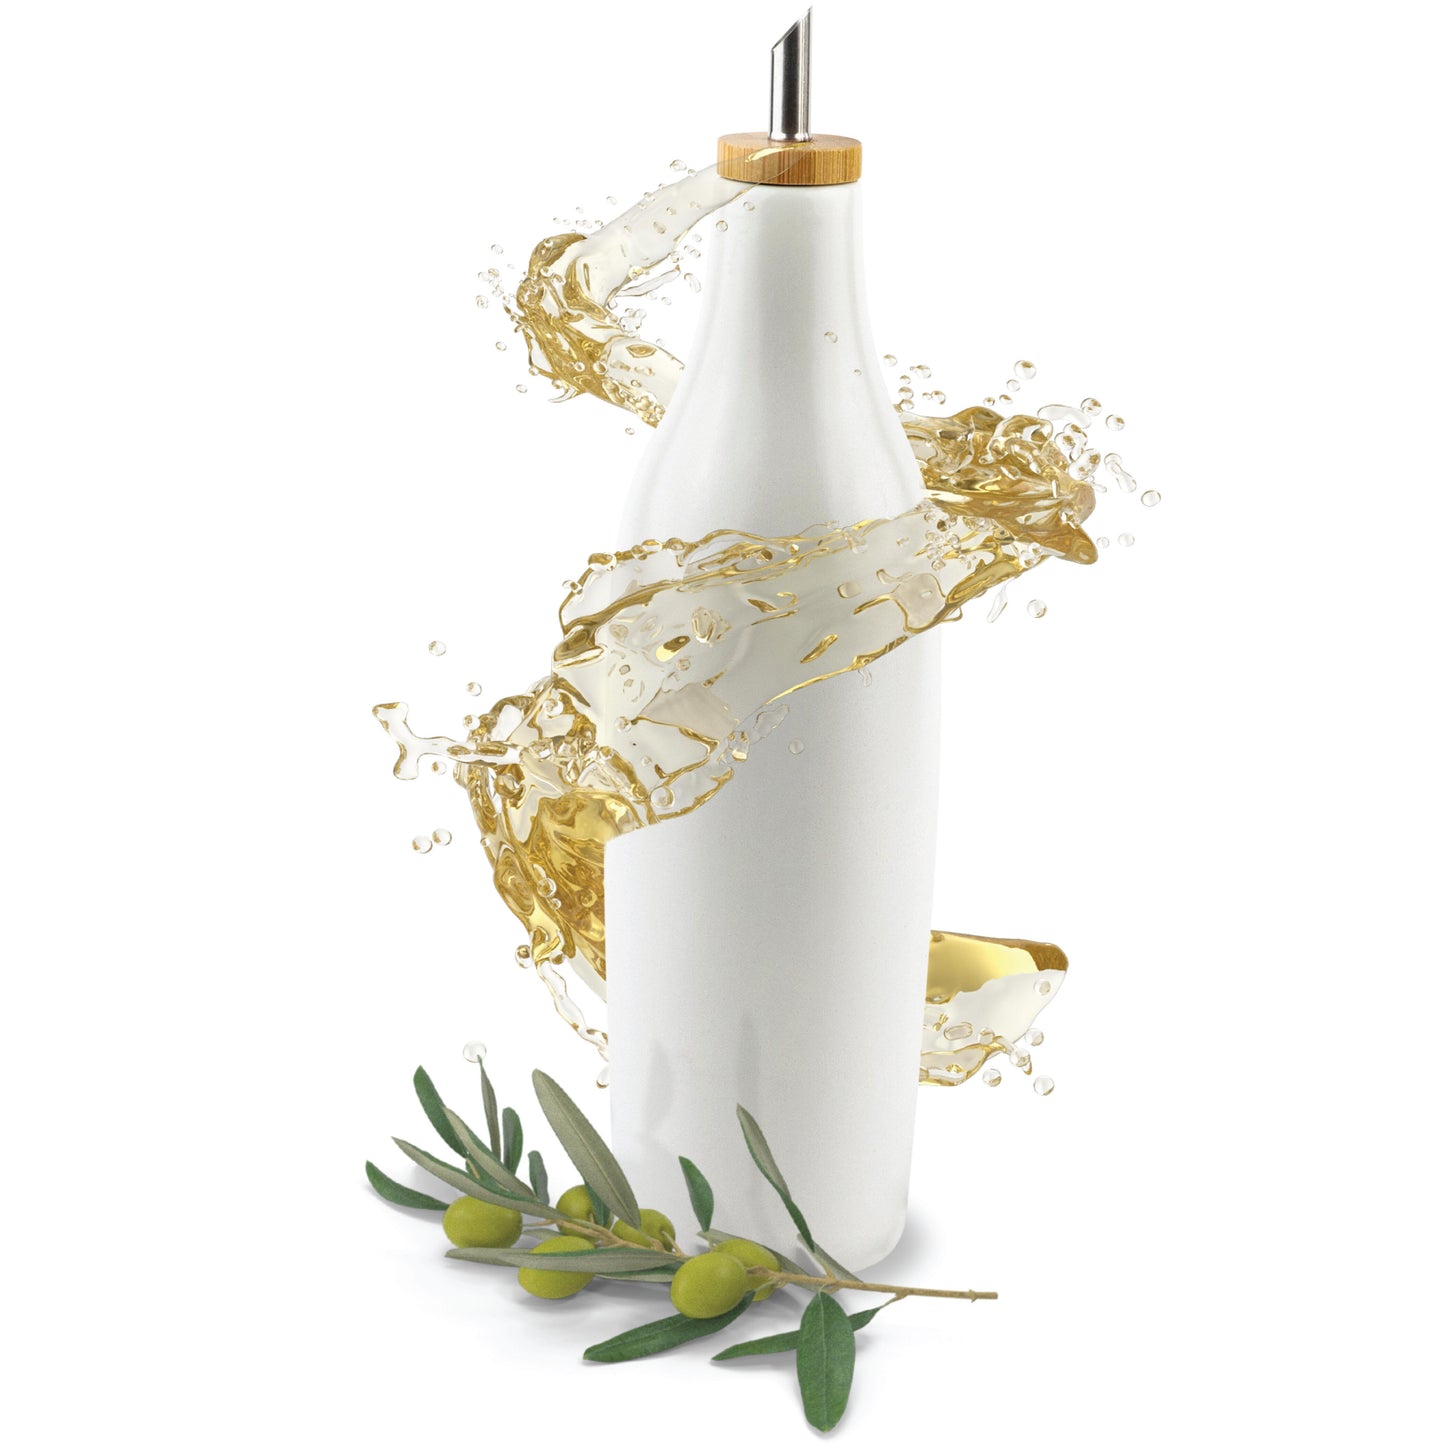 Ceramic Olive Oil Dispenser Bottle